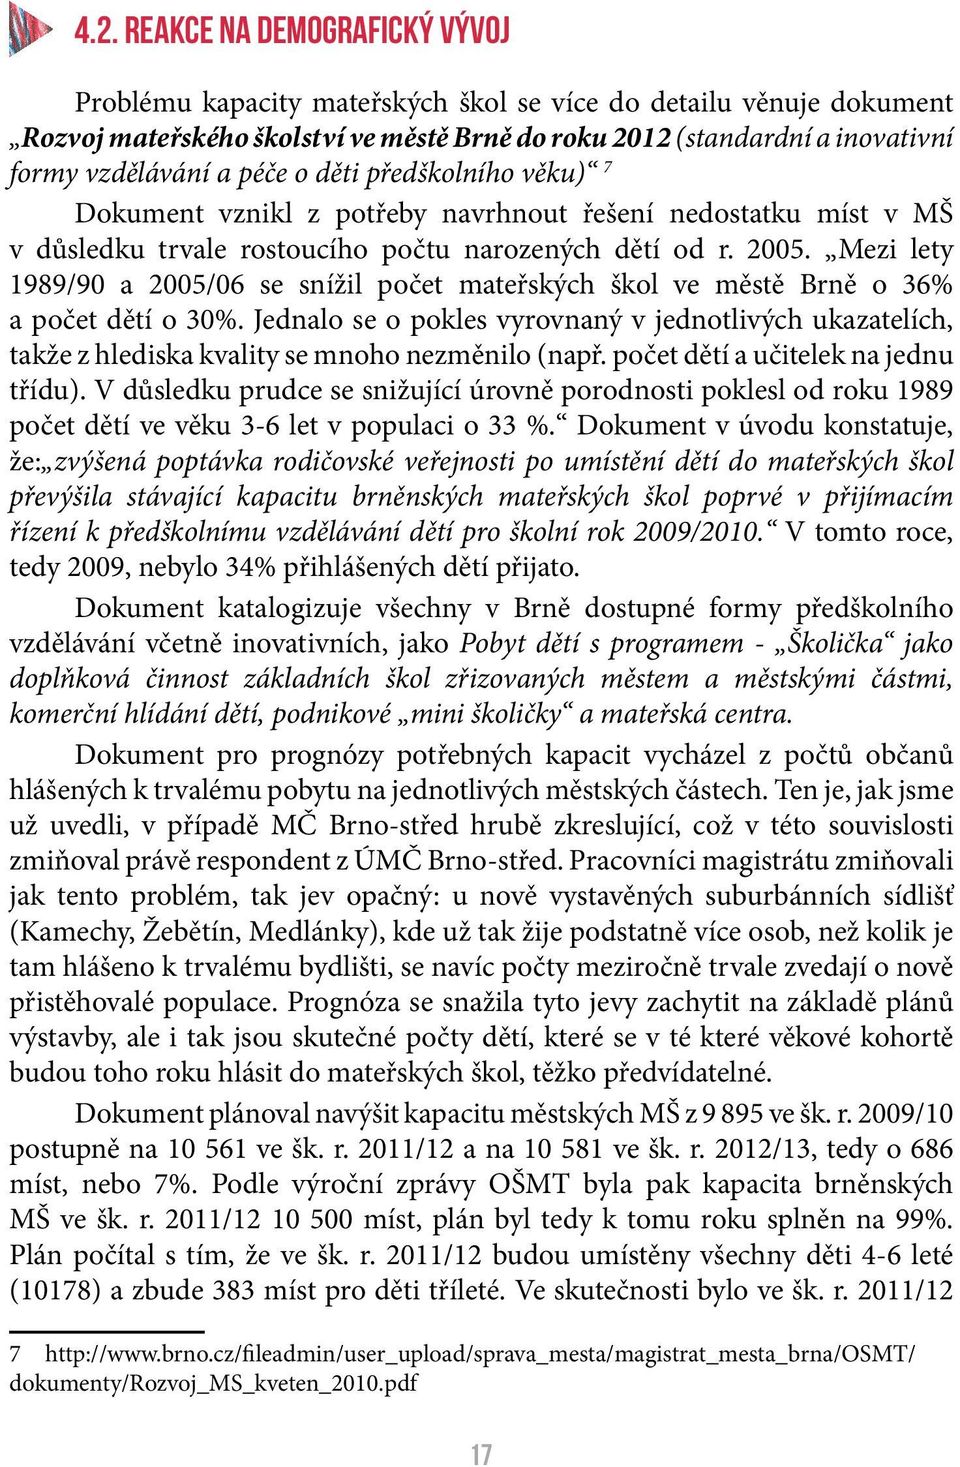 Mezi lety 1989/90 a 2005/06 se snížil počet mateřských škol ve městě Brně o 36% a počet dětí o 30%.